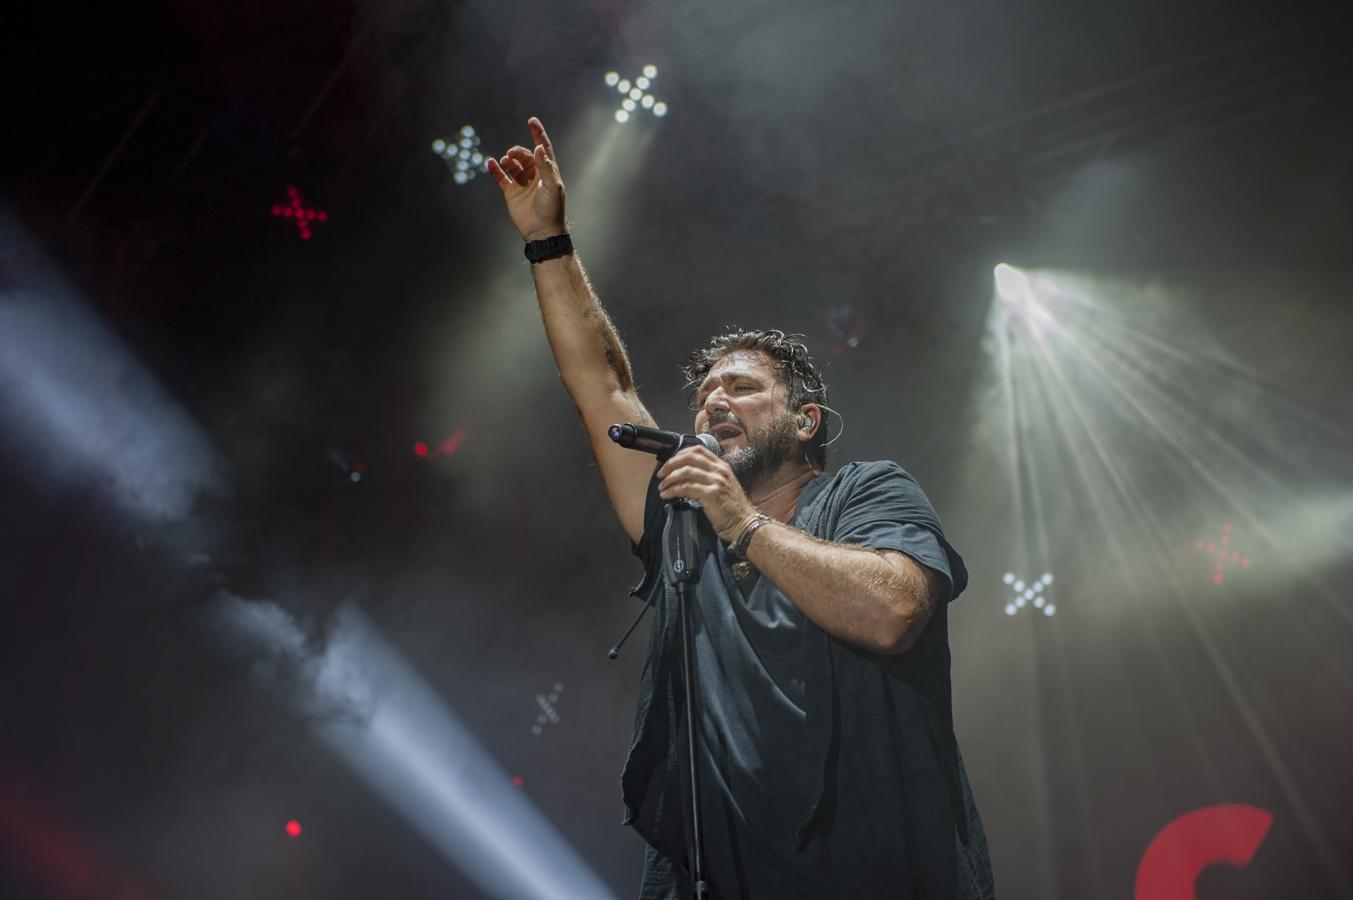 El cantante Antonio Orozco cerró anoche en Torrelavega los conciertos de la primera jornada del X Música en Grande